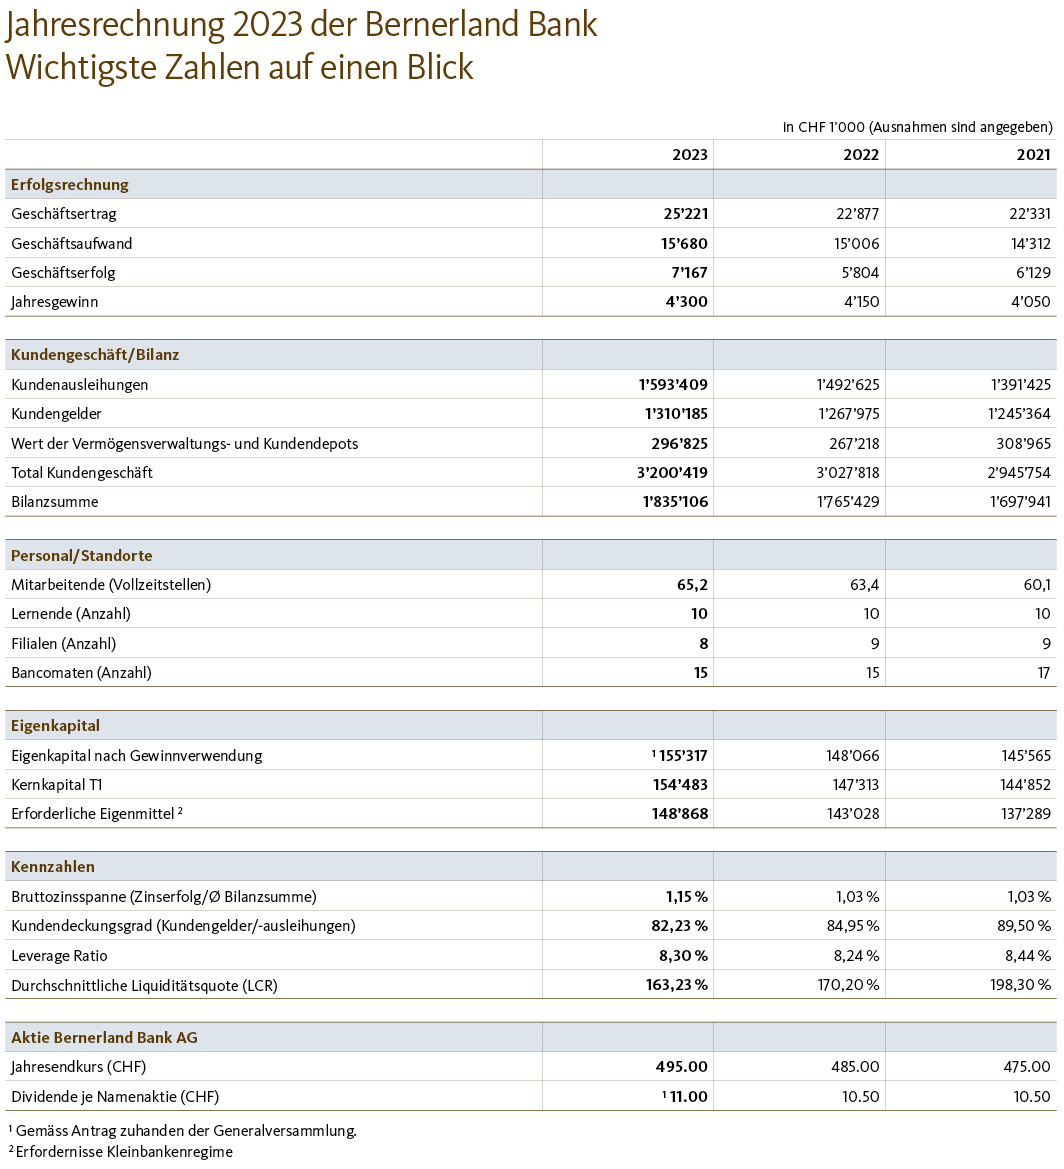 Die wichtigsten Zahlen zum Jahresabschluss 2023 der Bernerland Bank im Überblick. 